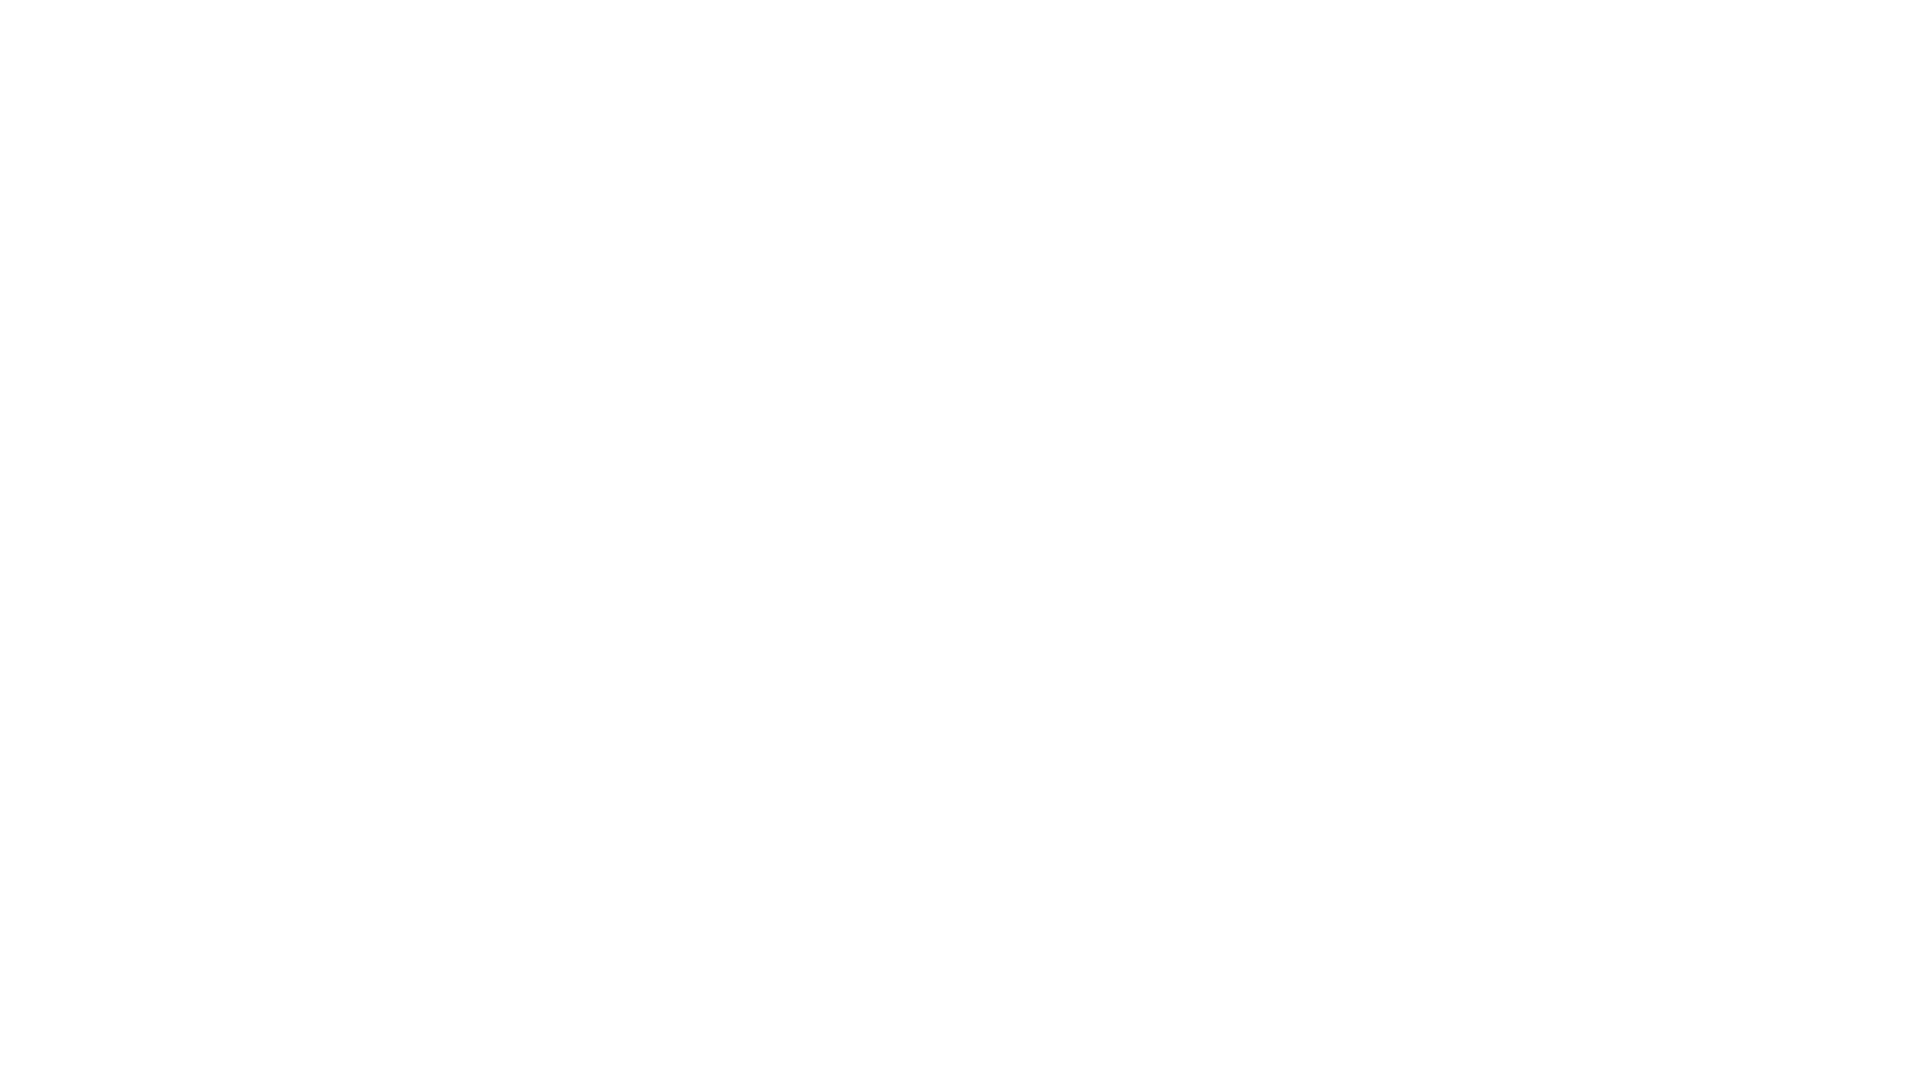 clement dinatale logo